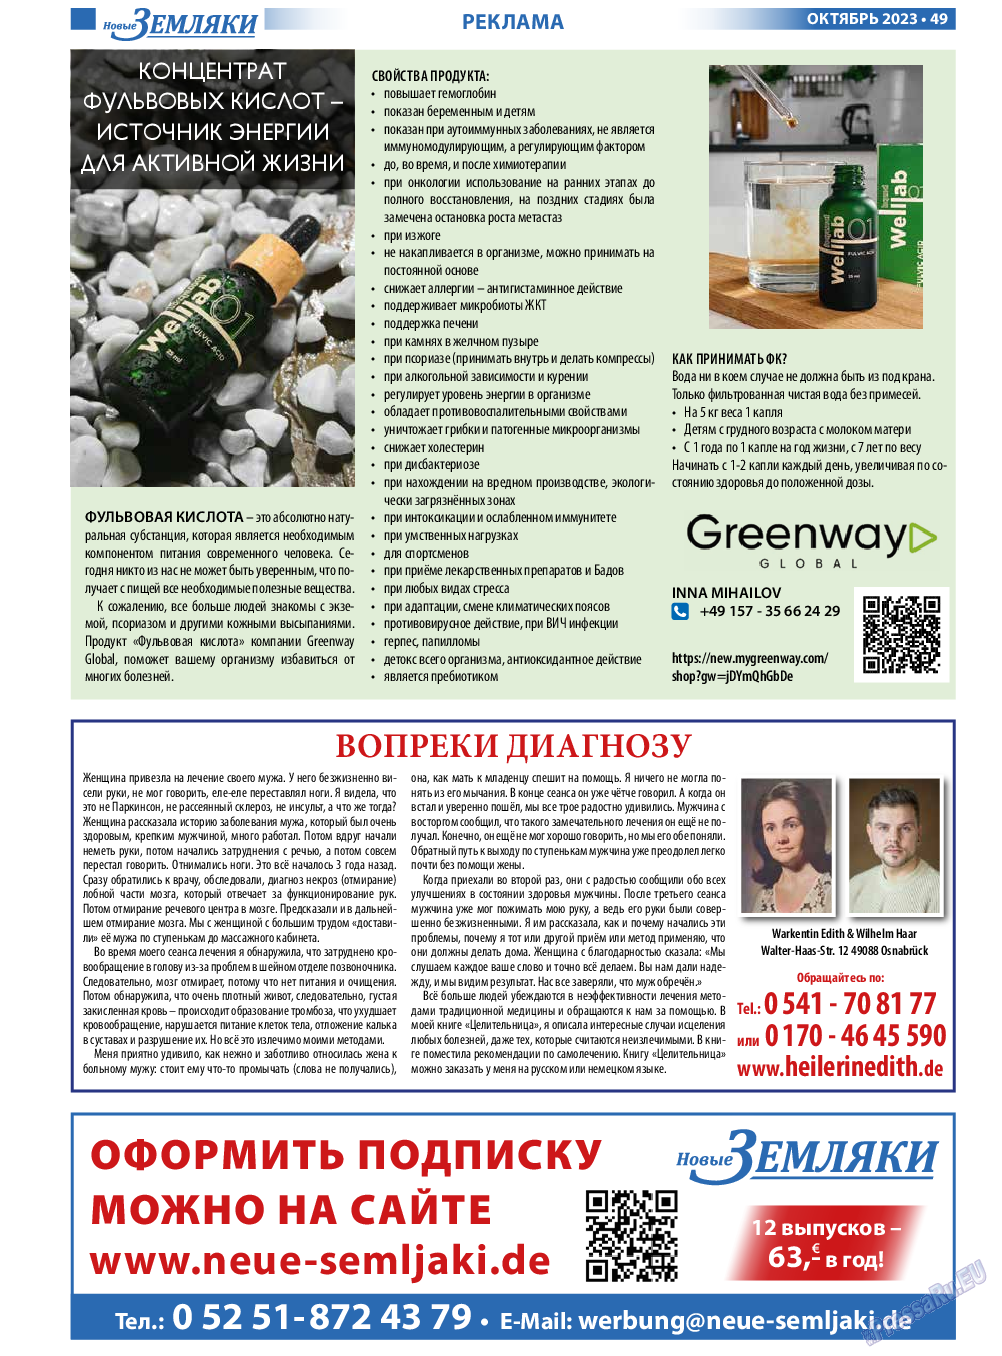 Новые Земляки, газета. 2023 №10 стр.49